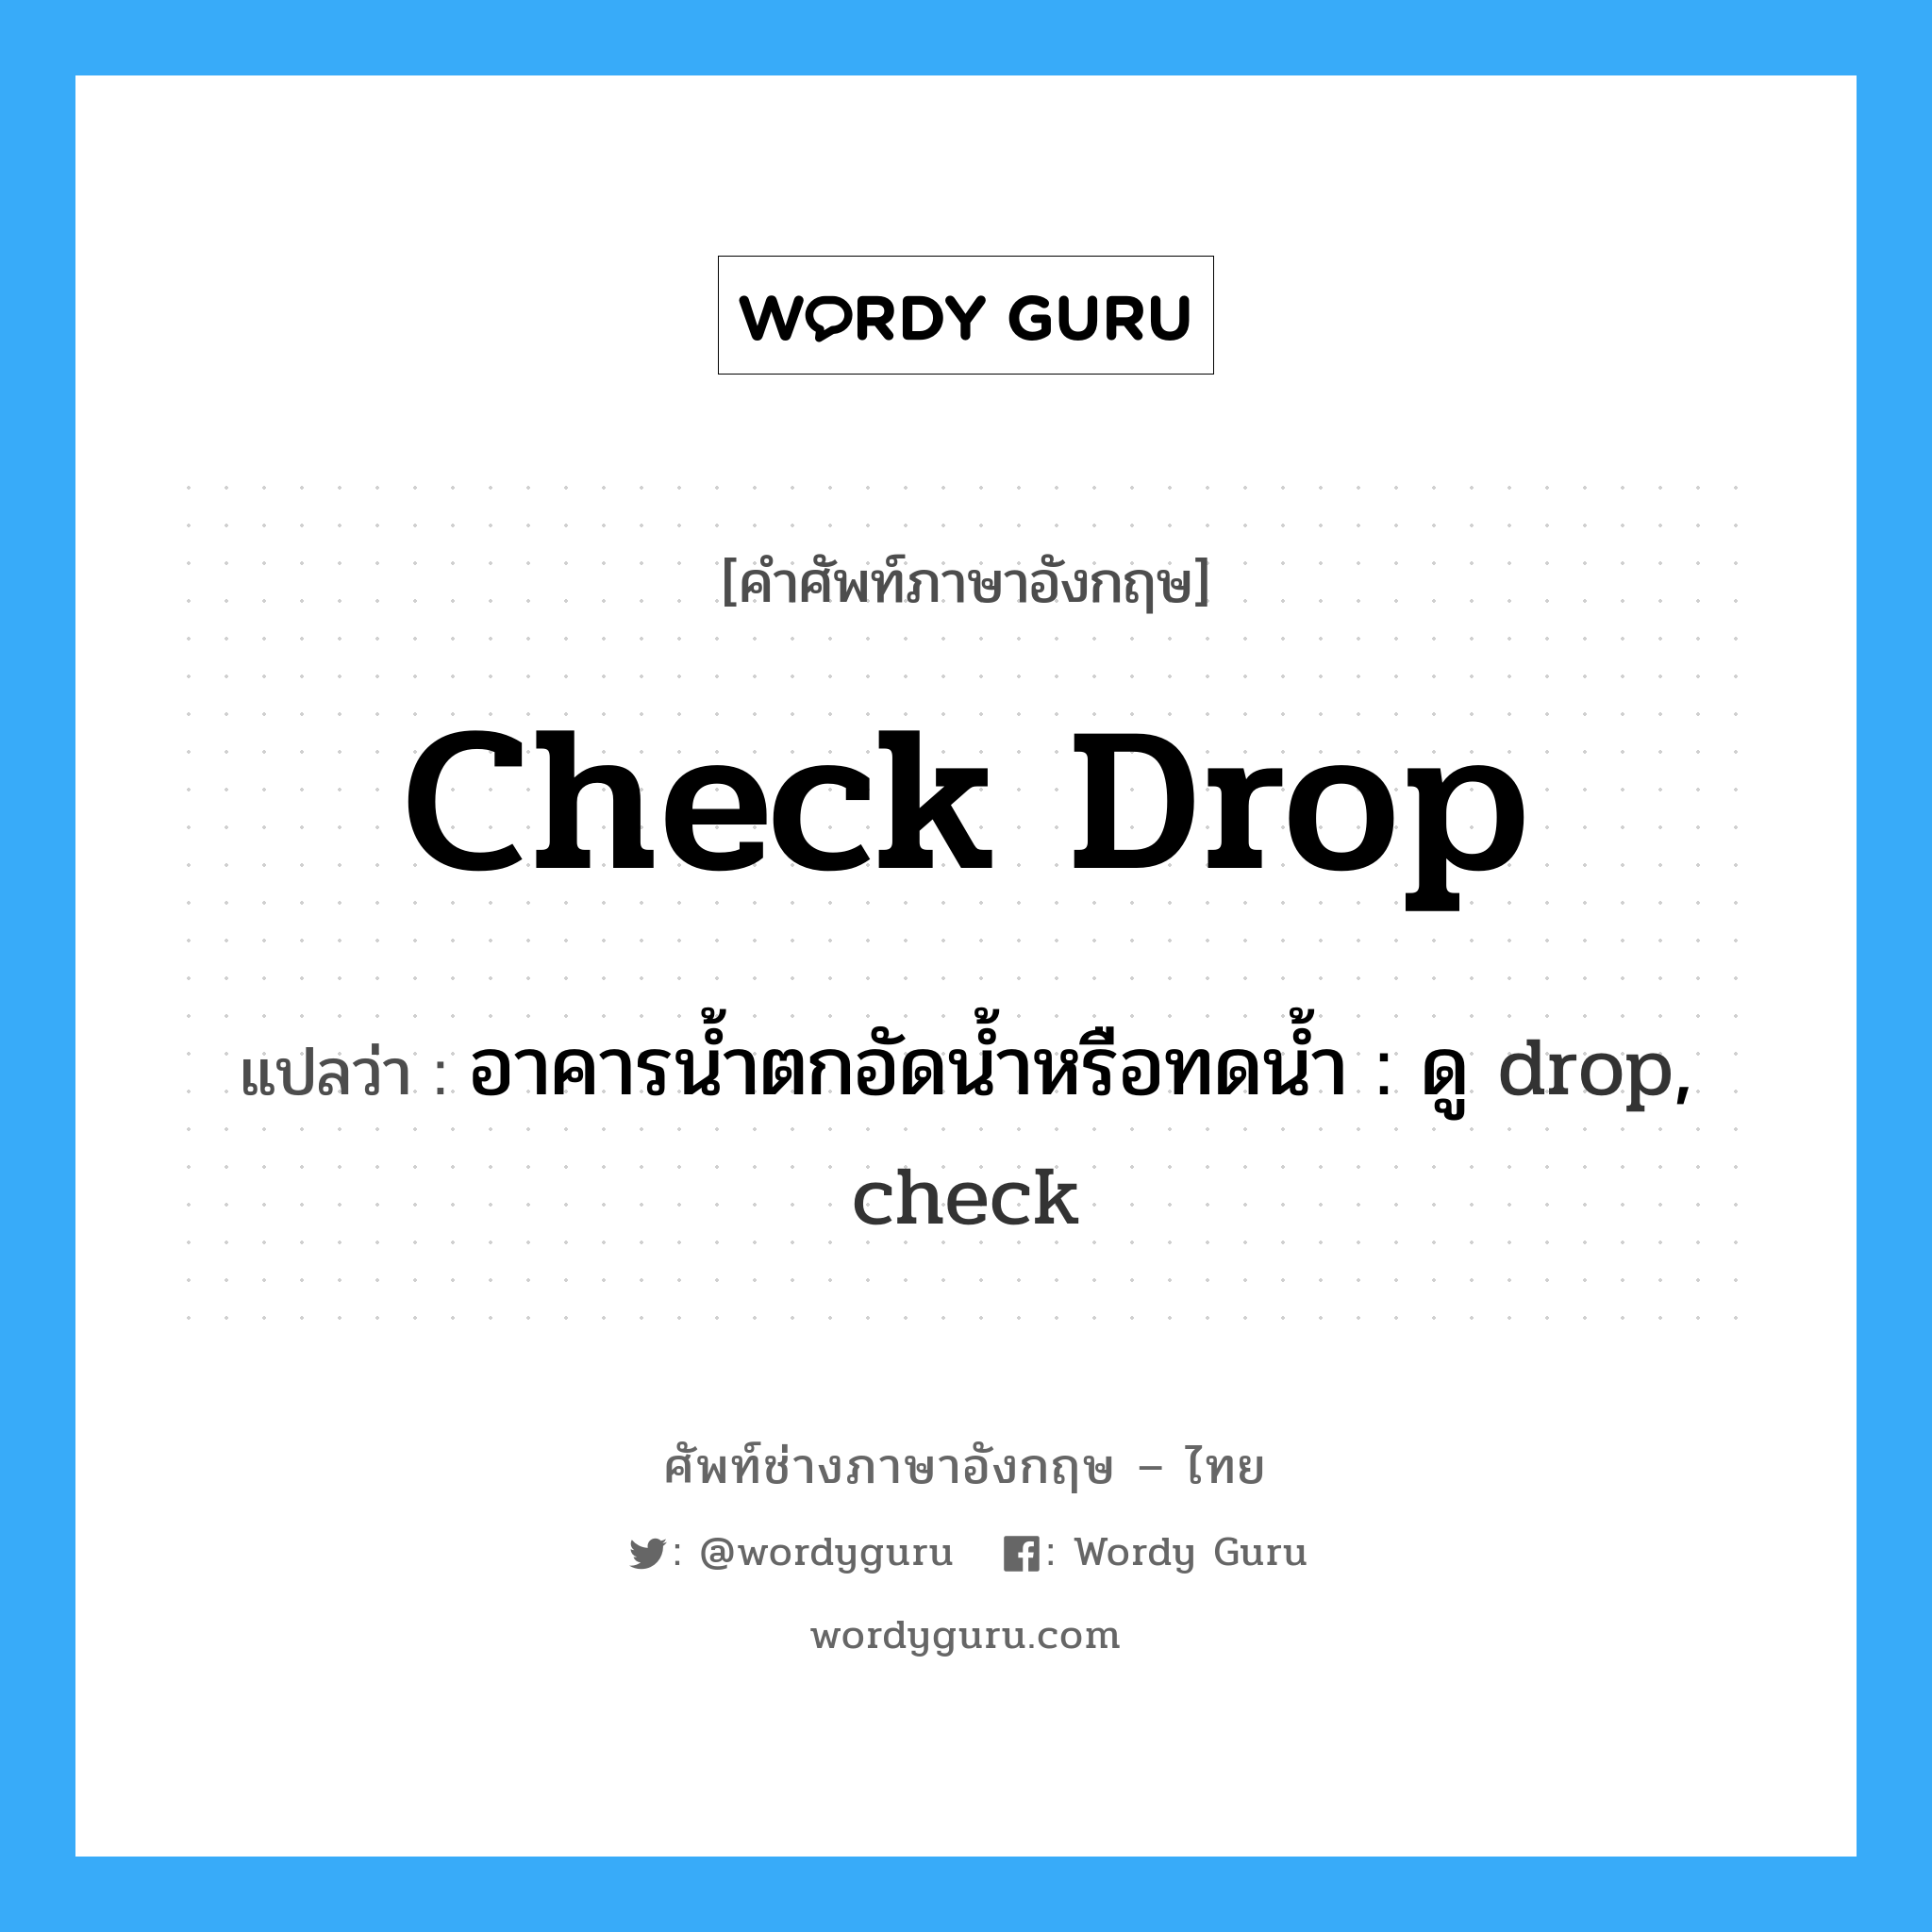 อาคารน้ำตกอัดน้ำหรือทดน้ำ : ดู drop, check ภาษาอังกฤษ?, คำศัพท์ช่างภาษาอังกฤษ - ไทย อาคารน้ำตกอัดน้ำหรือทดน้ำ : ดู drop, check คำศัพท์ภาษาอังกฤษ อาคารน้ำตกอัดน้ำหรือทดน้ำ : ดู drop, check แปลว่า check drop